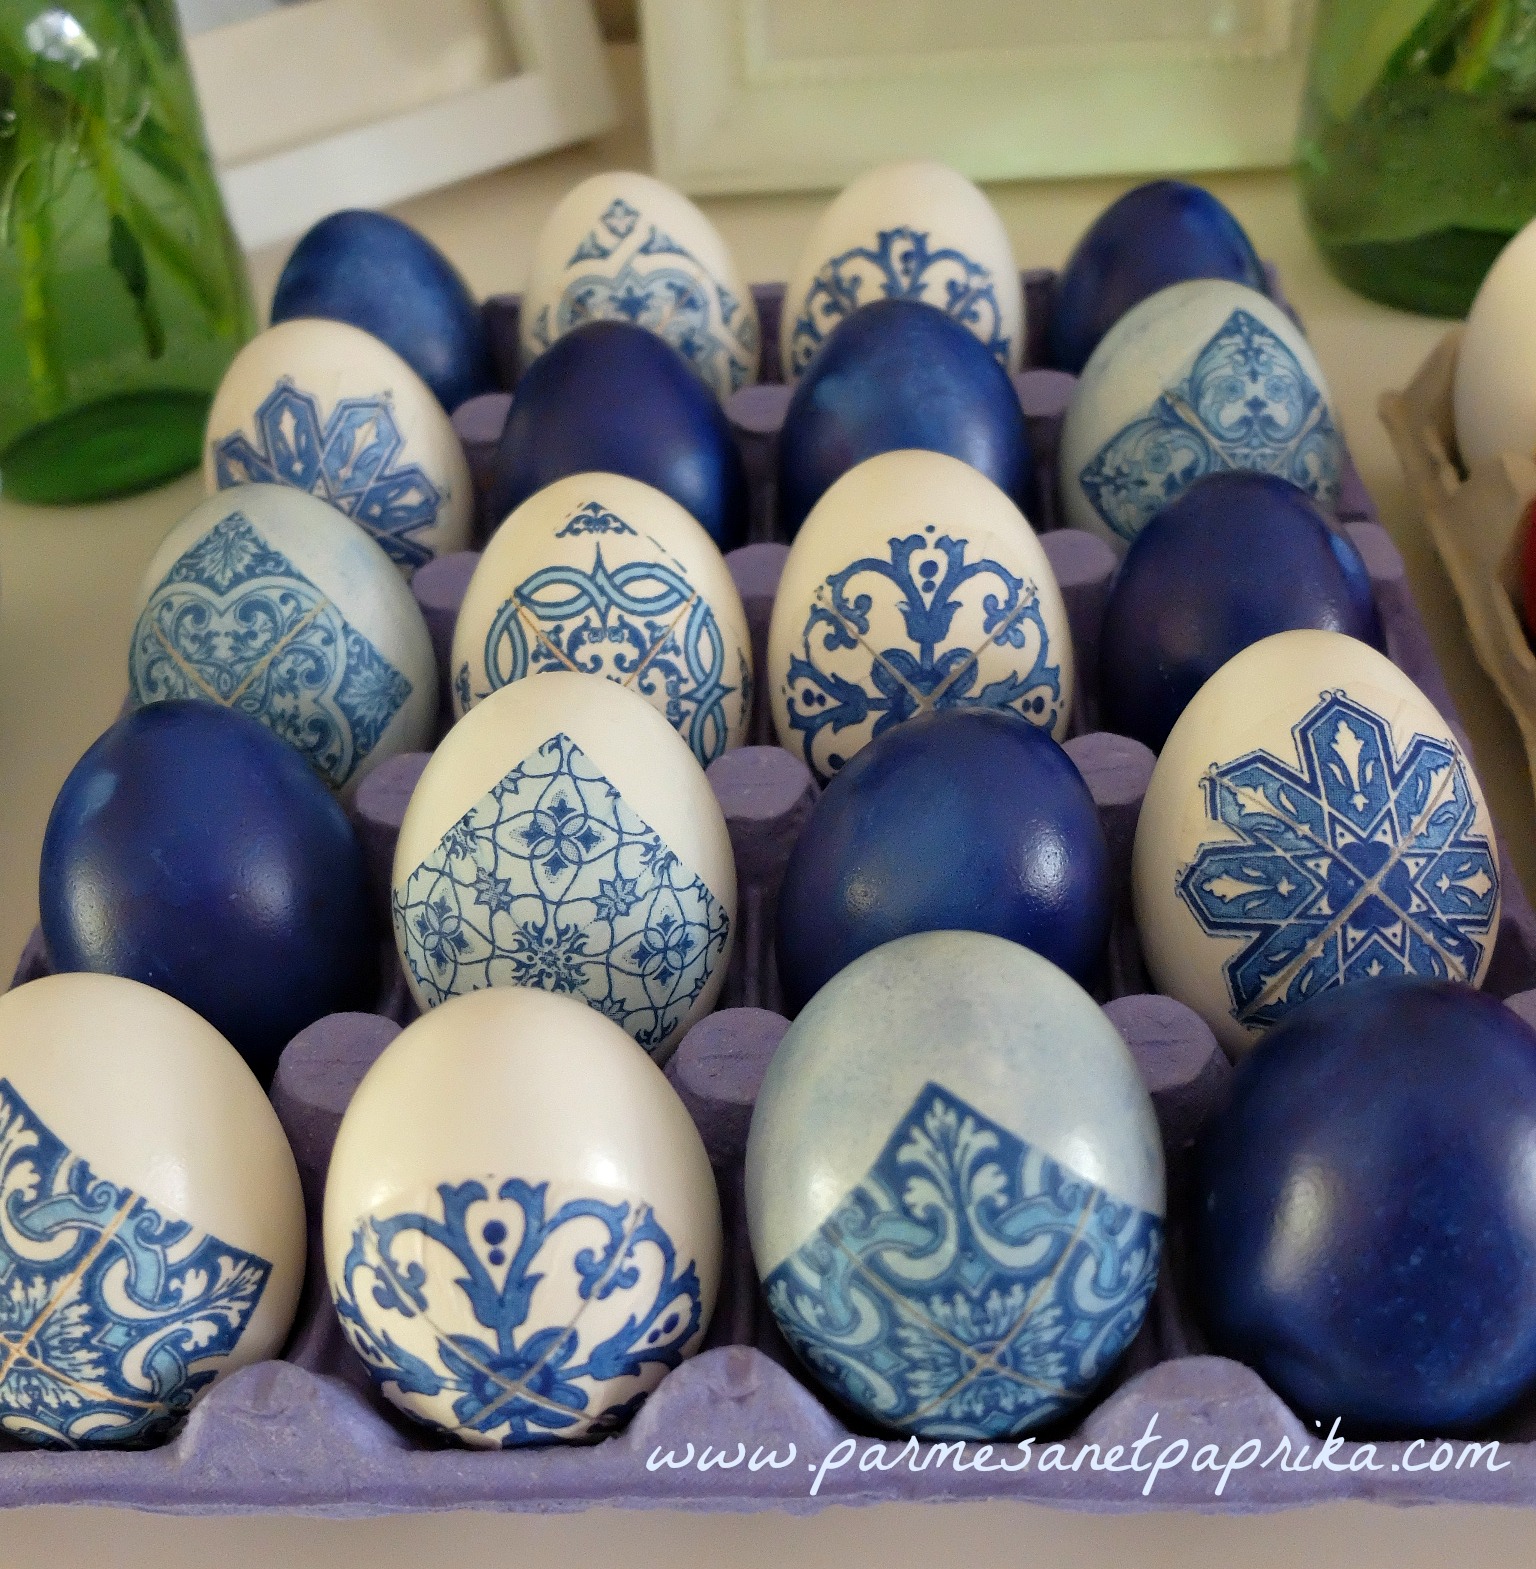 Parmesan et Paprika: Les Oeufs de Pâques, teinture et décoration